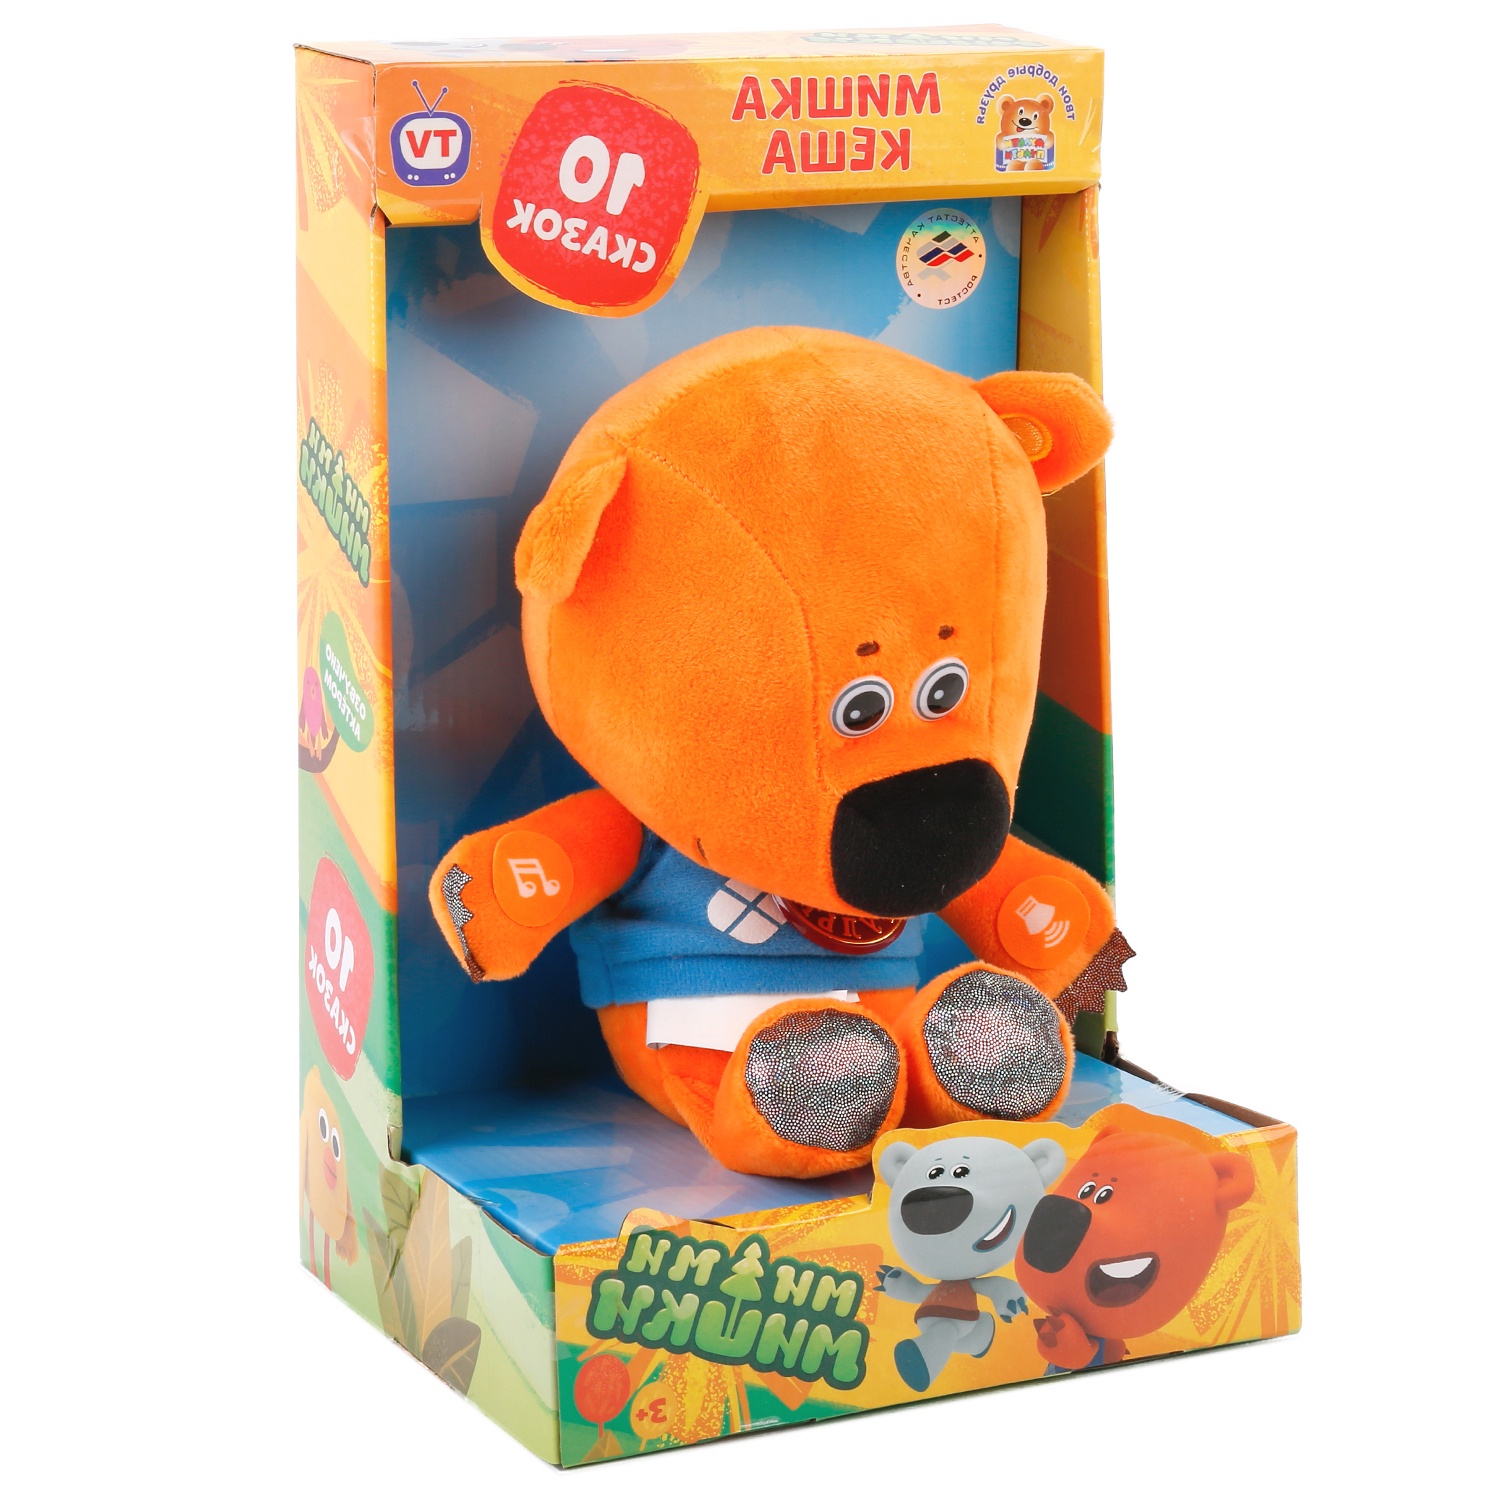 Мягкая игрушка Мульти-пульти 253325, 253325 оранжевый